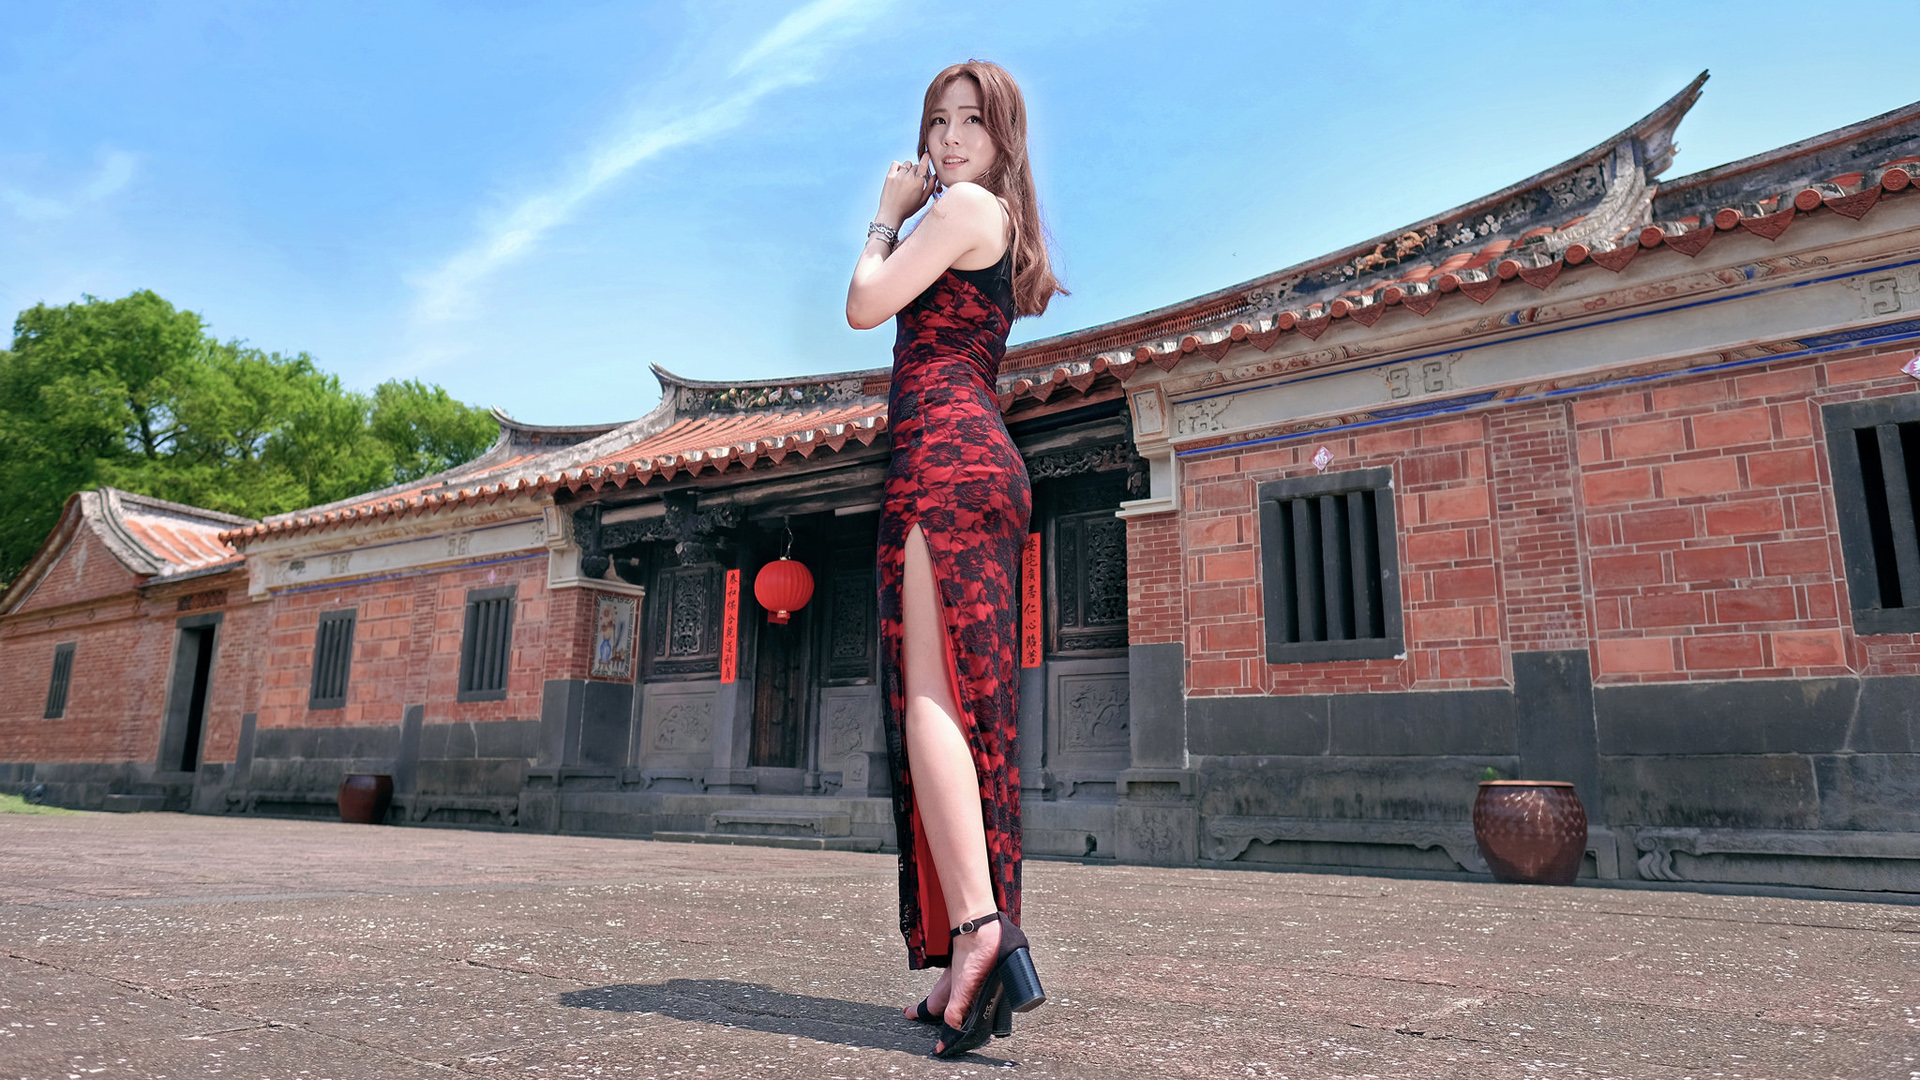 Women Model Asian Brunette Heels Feet High Cut Dress Red Dress Long Hair Looking Over Shoulder Women 1920x1080